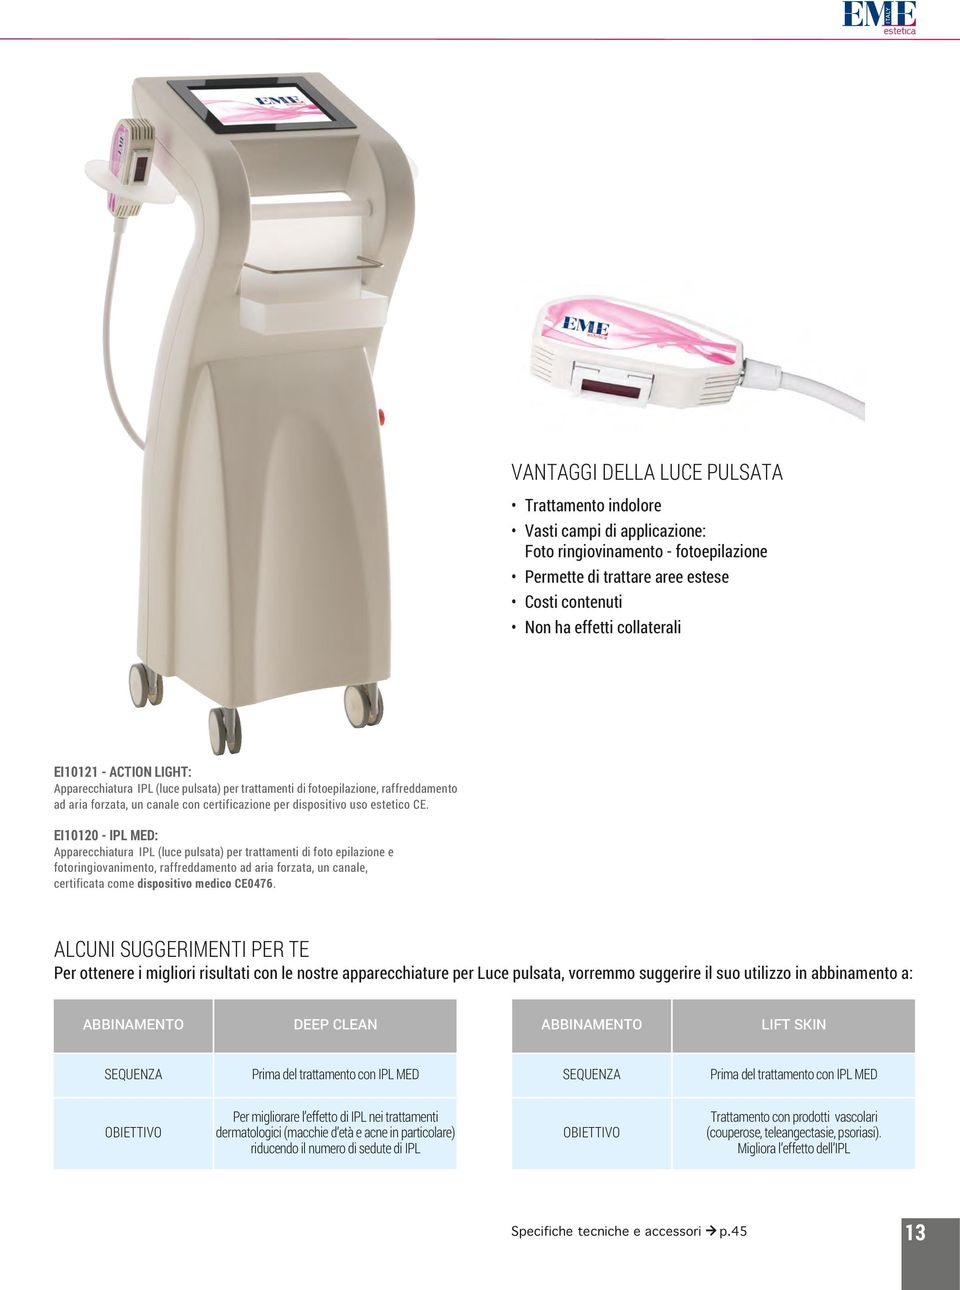 EI10120 - IPL MED: Apparecchiatura IPL (luce pulsata) per trattamenti di foto epilazione e fotoringiovanimento, raffreddamento ad aria forzata, un canale, certificata come dispositivo medico CE0476.